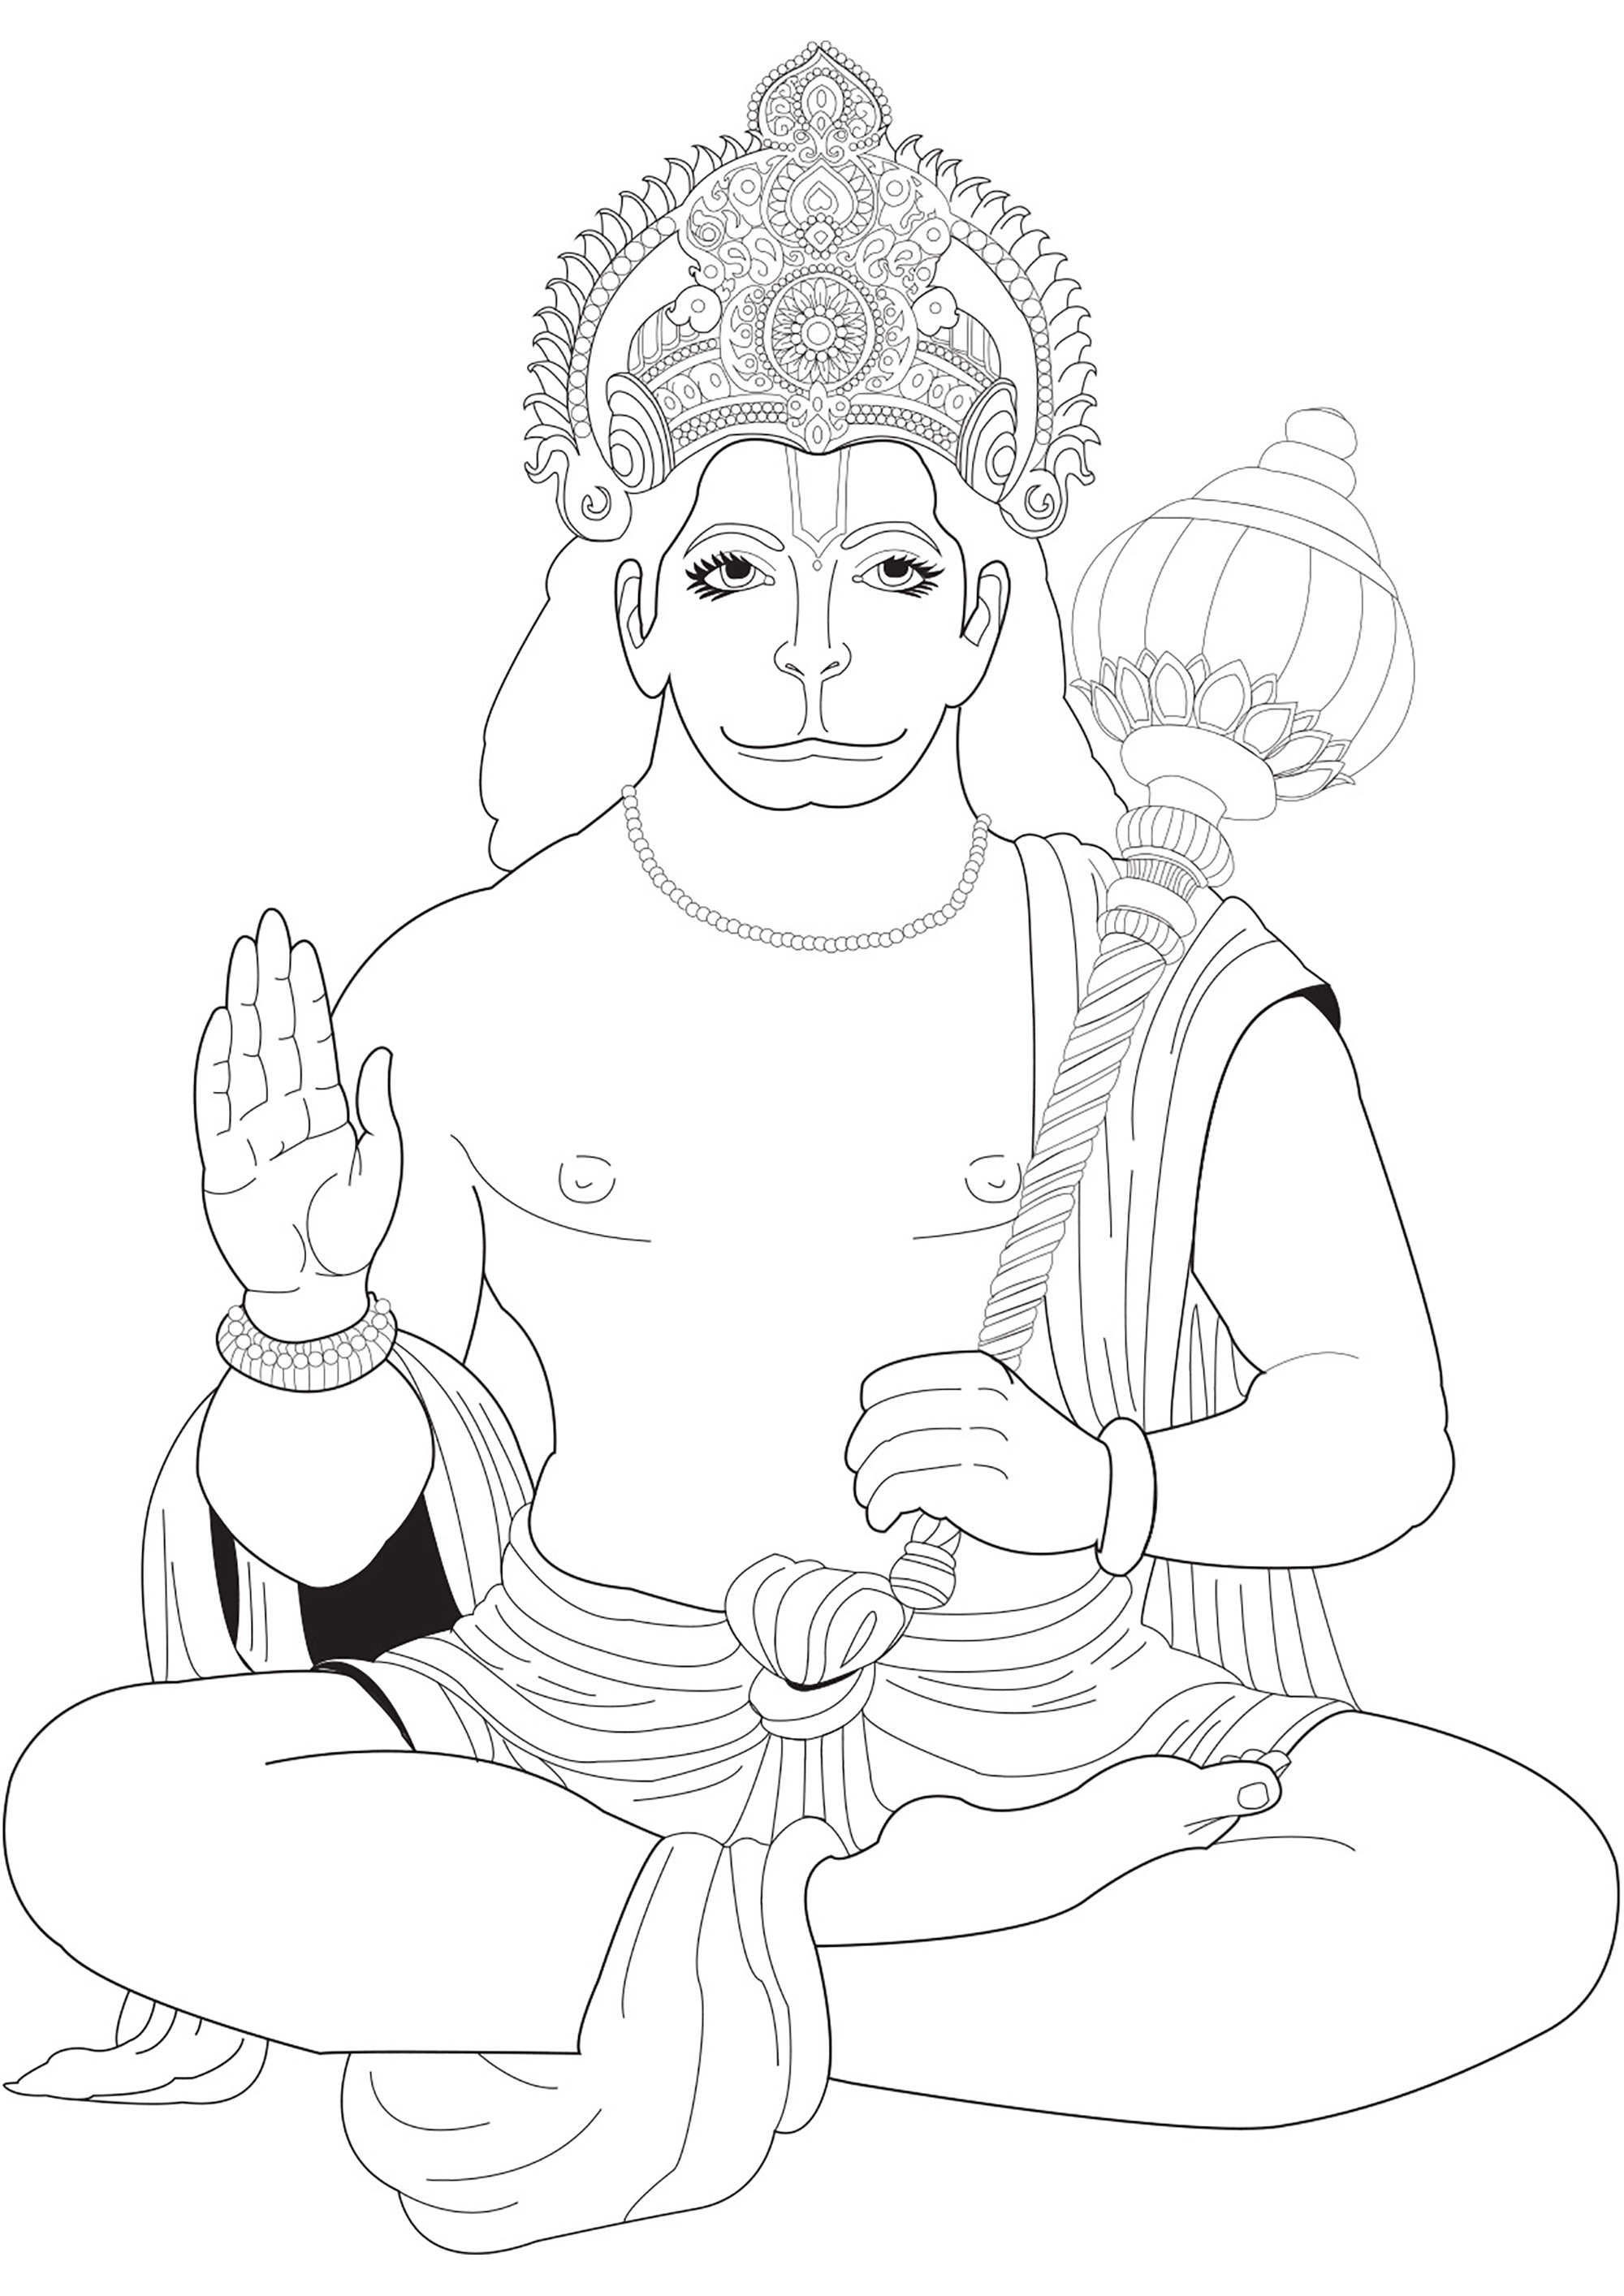 Desenho de Hanuman para colorir. Hanuman é uma figura venerada na mitologia hindu, considerado o deus macaco e discípulo devoto do Senhor Rama, celebrado pela sua extraordinária força e lealdade inabalável no épico Ramayana.